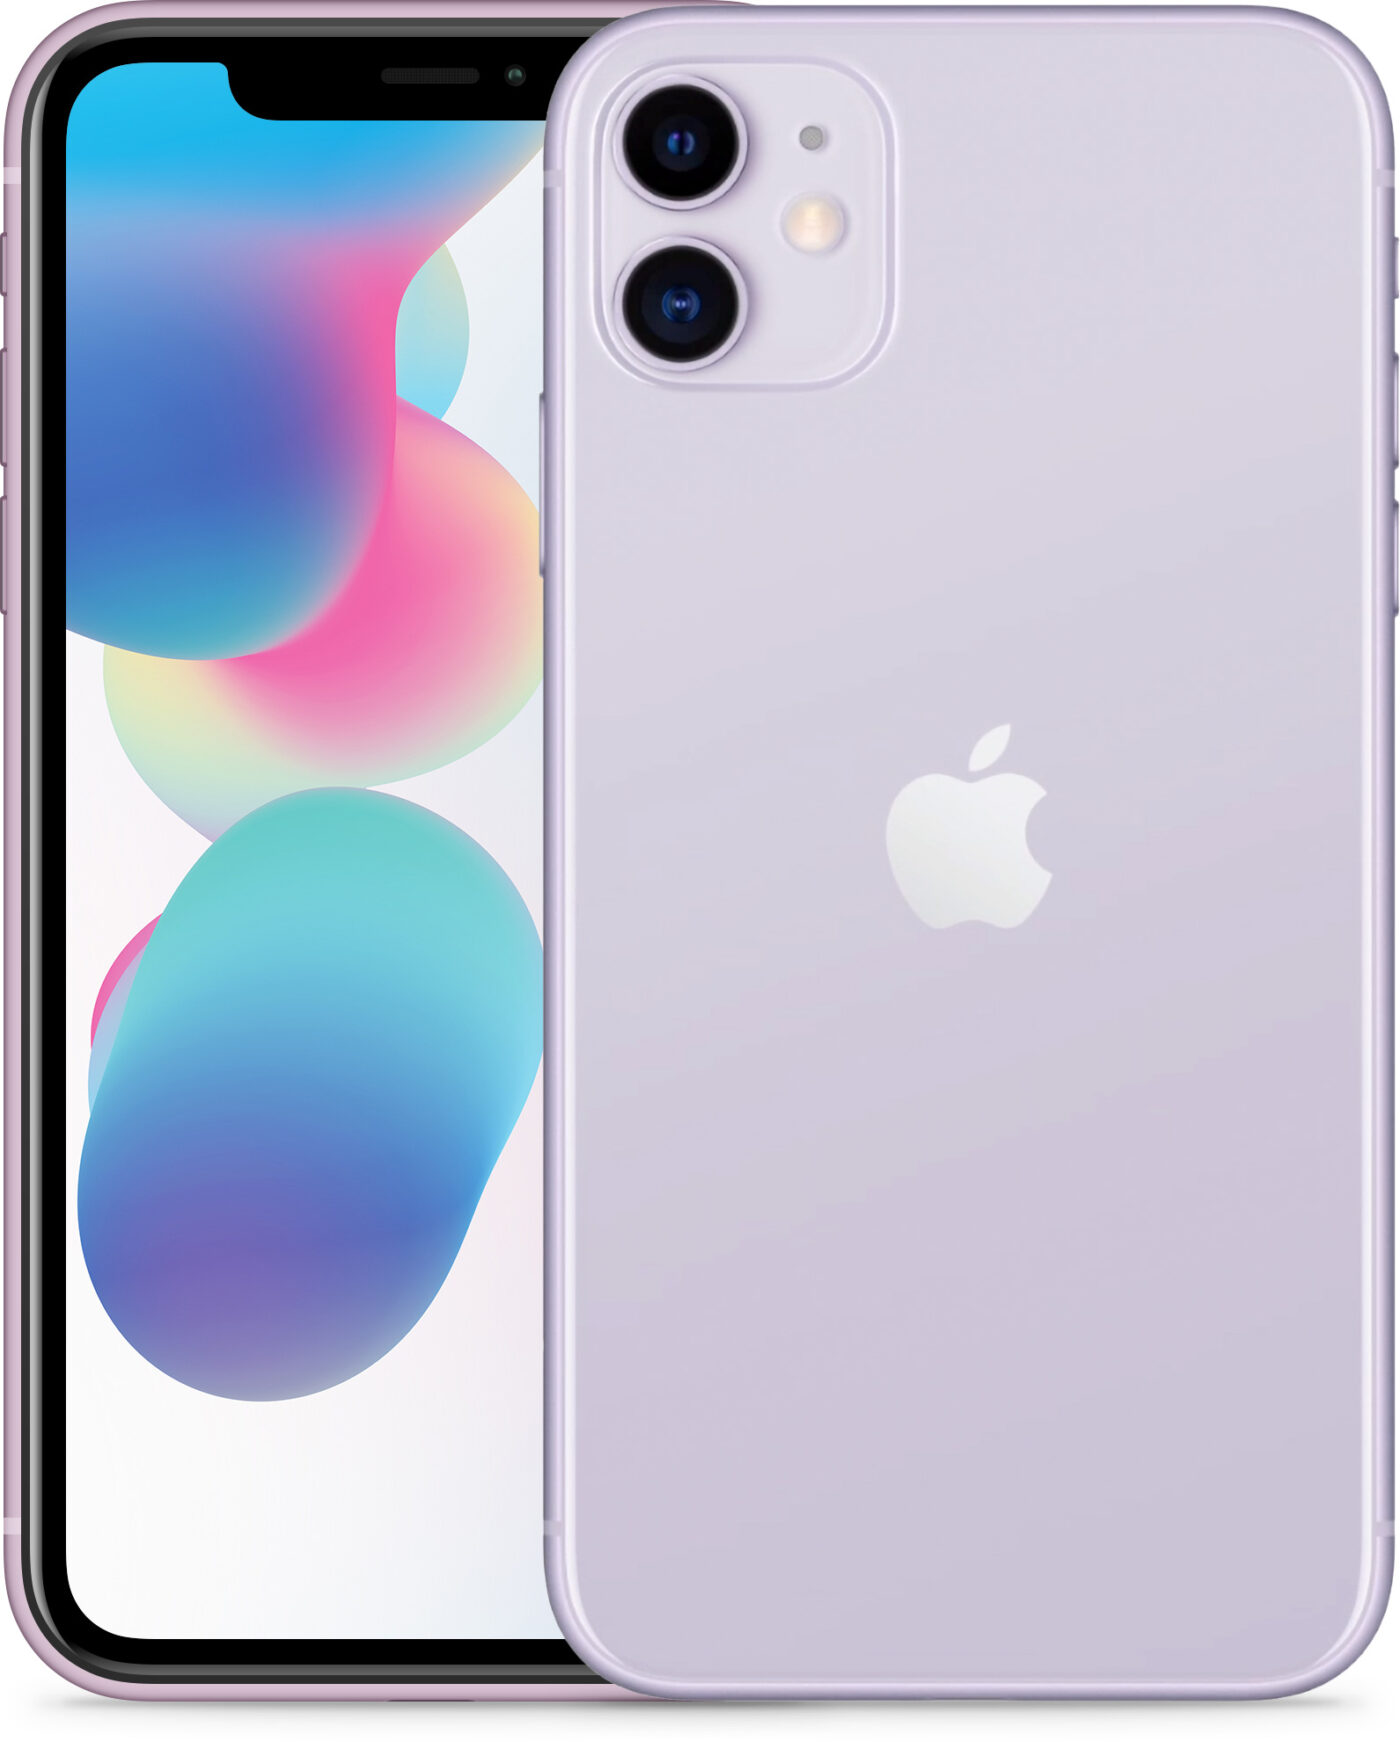 iPhone 11 violett